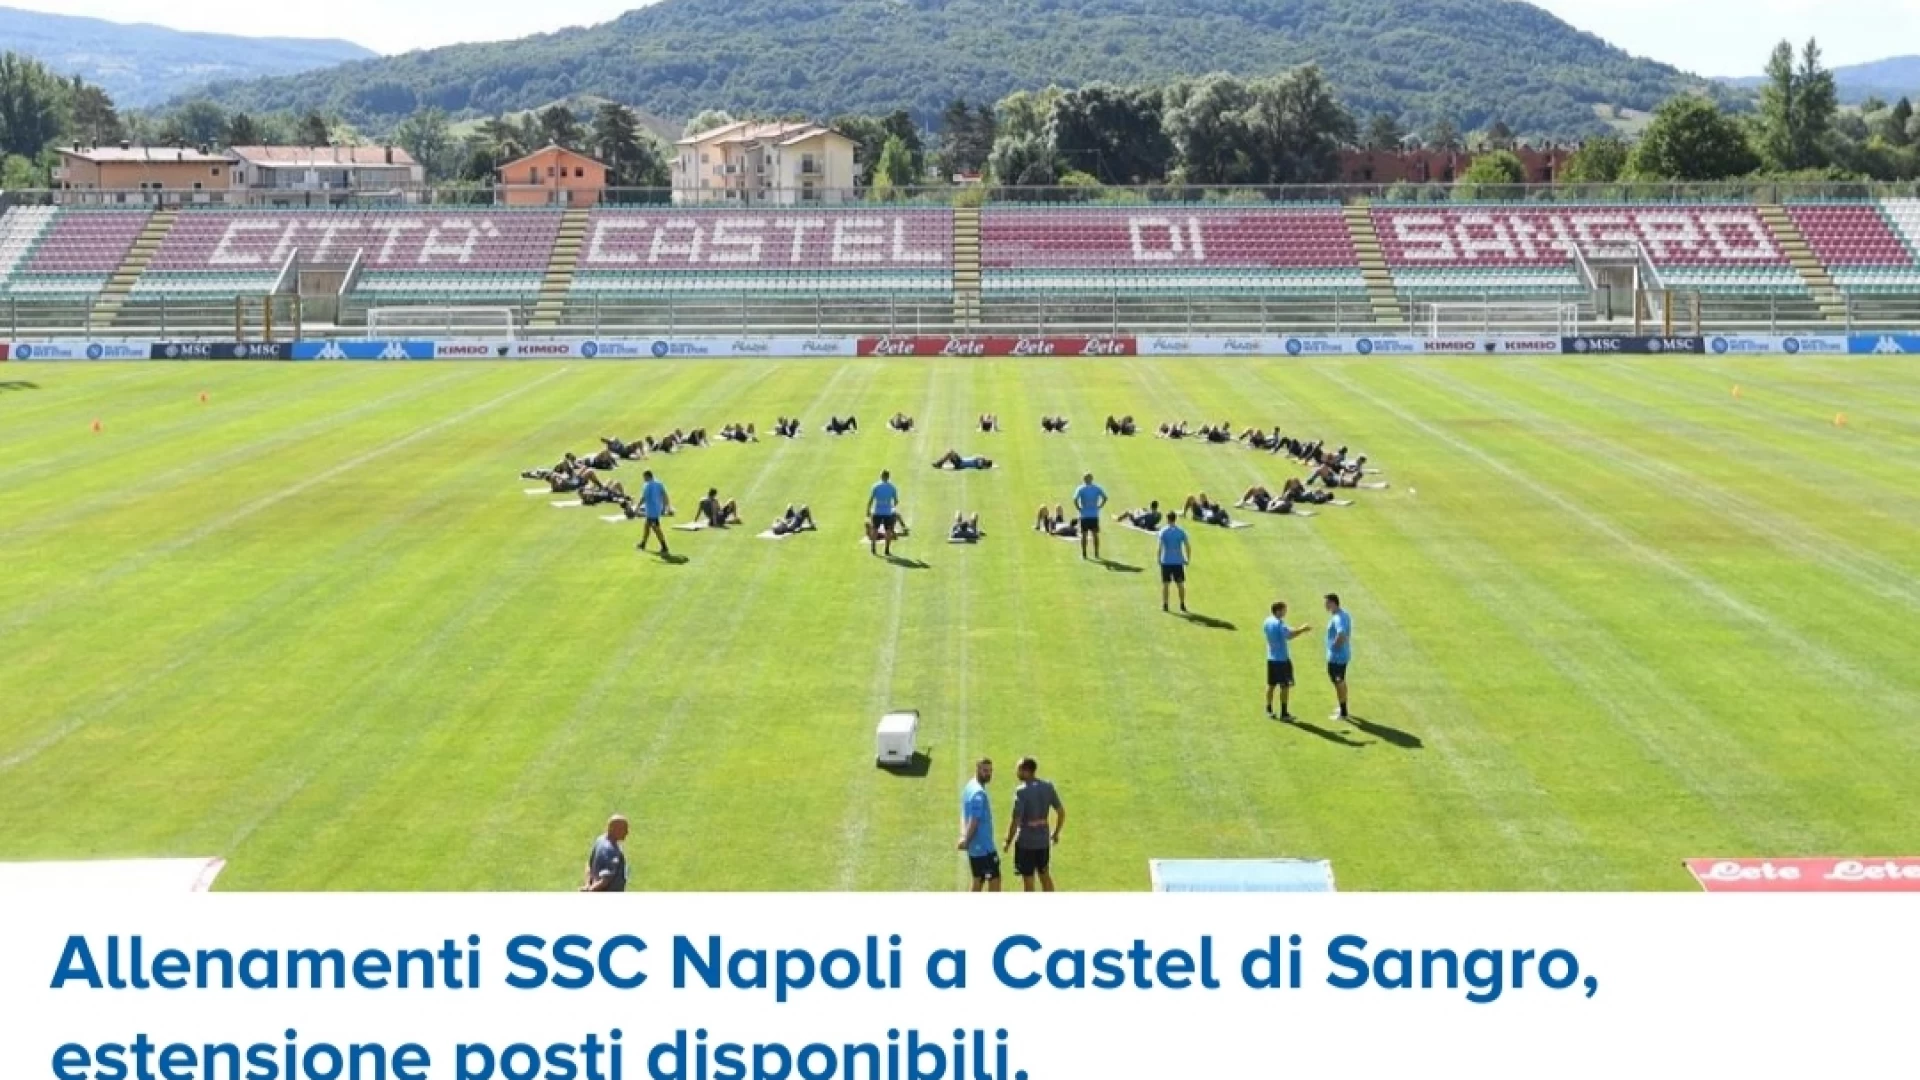 Castel Di Sangro: allenamenti SSC Napoli, ampliamento posti disponibili per le ultime sedute